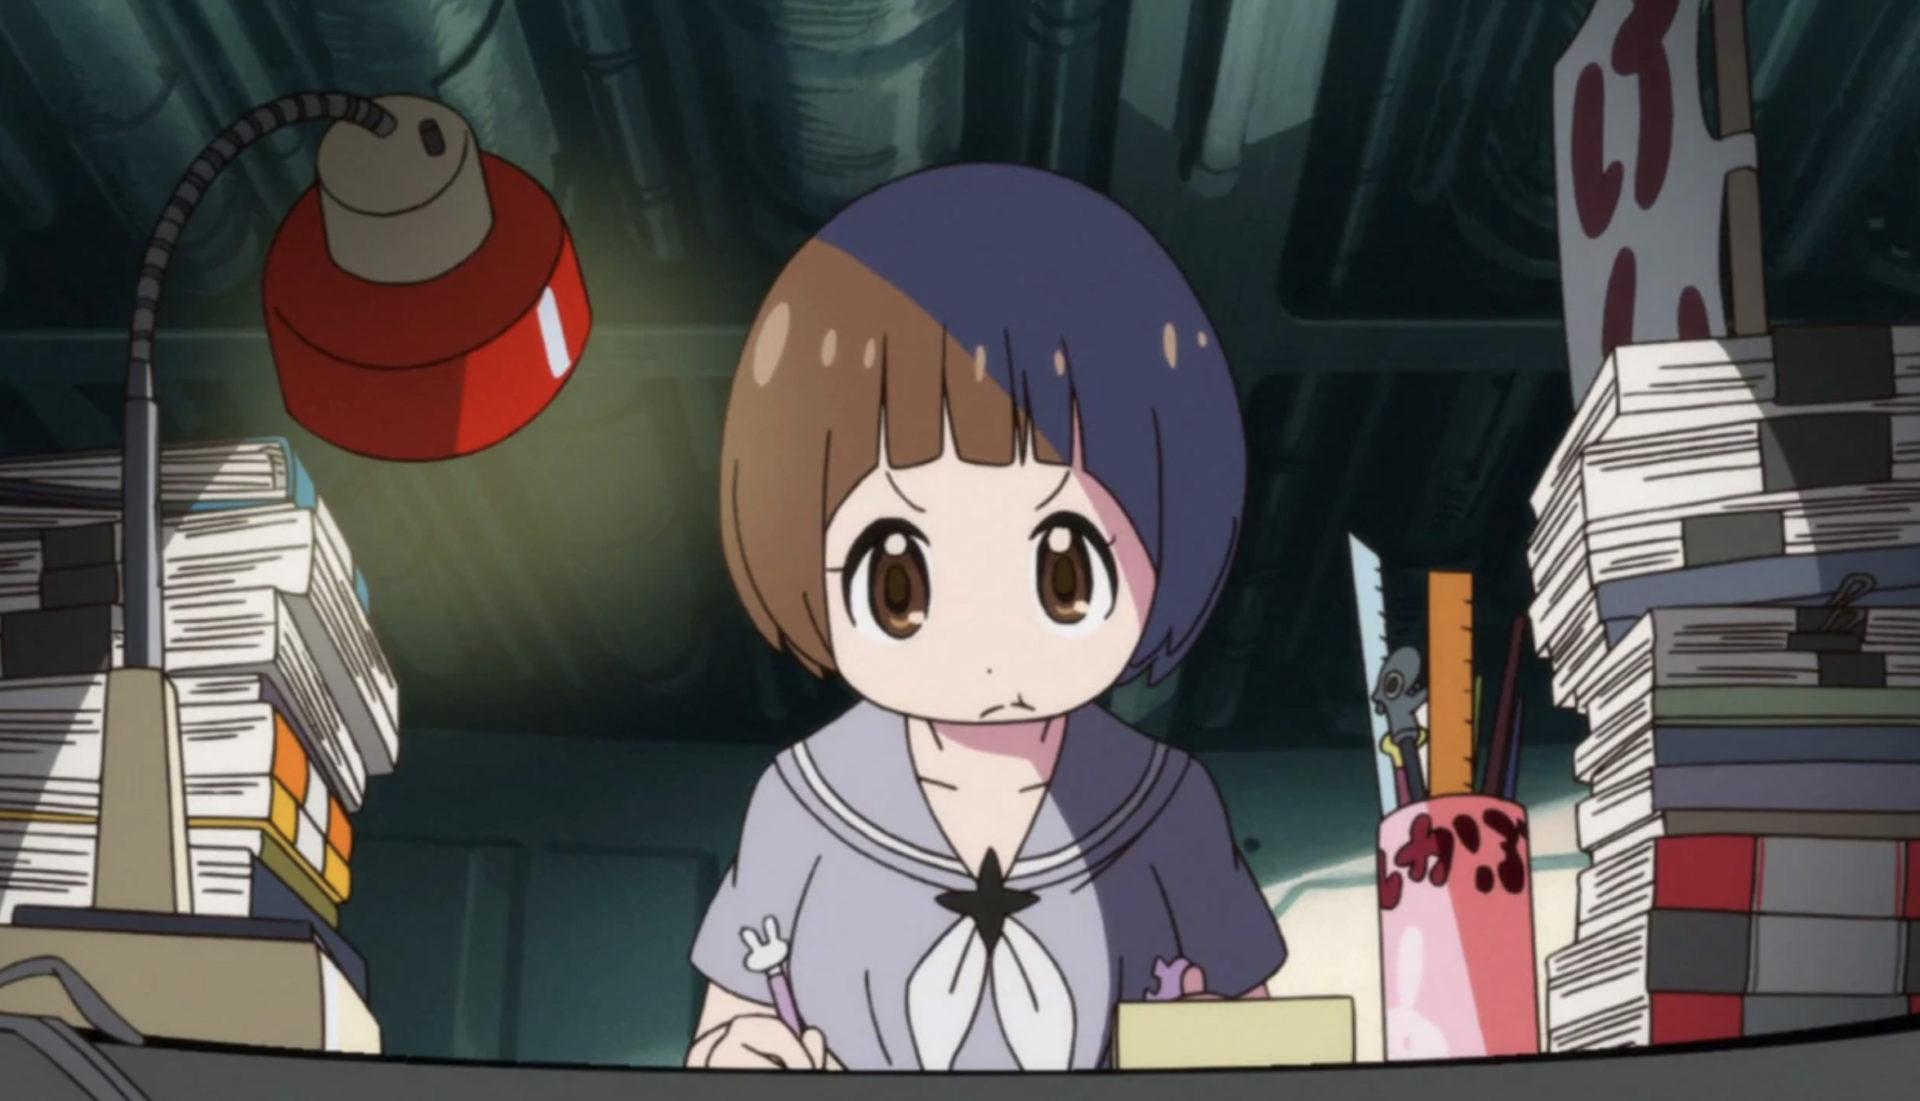 Screenshot of Mako from Kill La Kill anime.